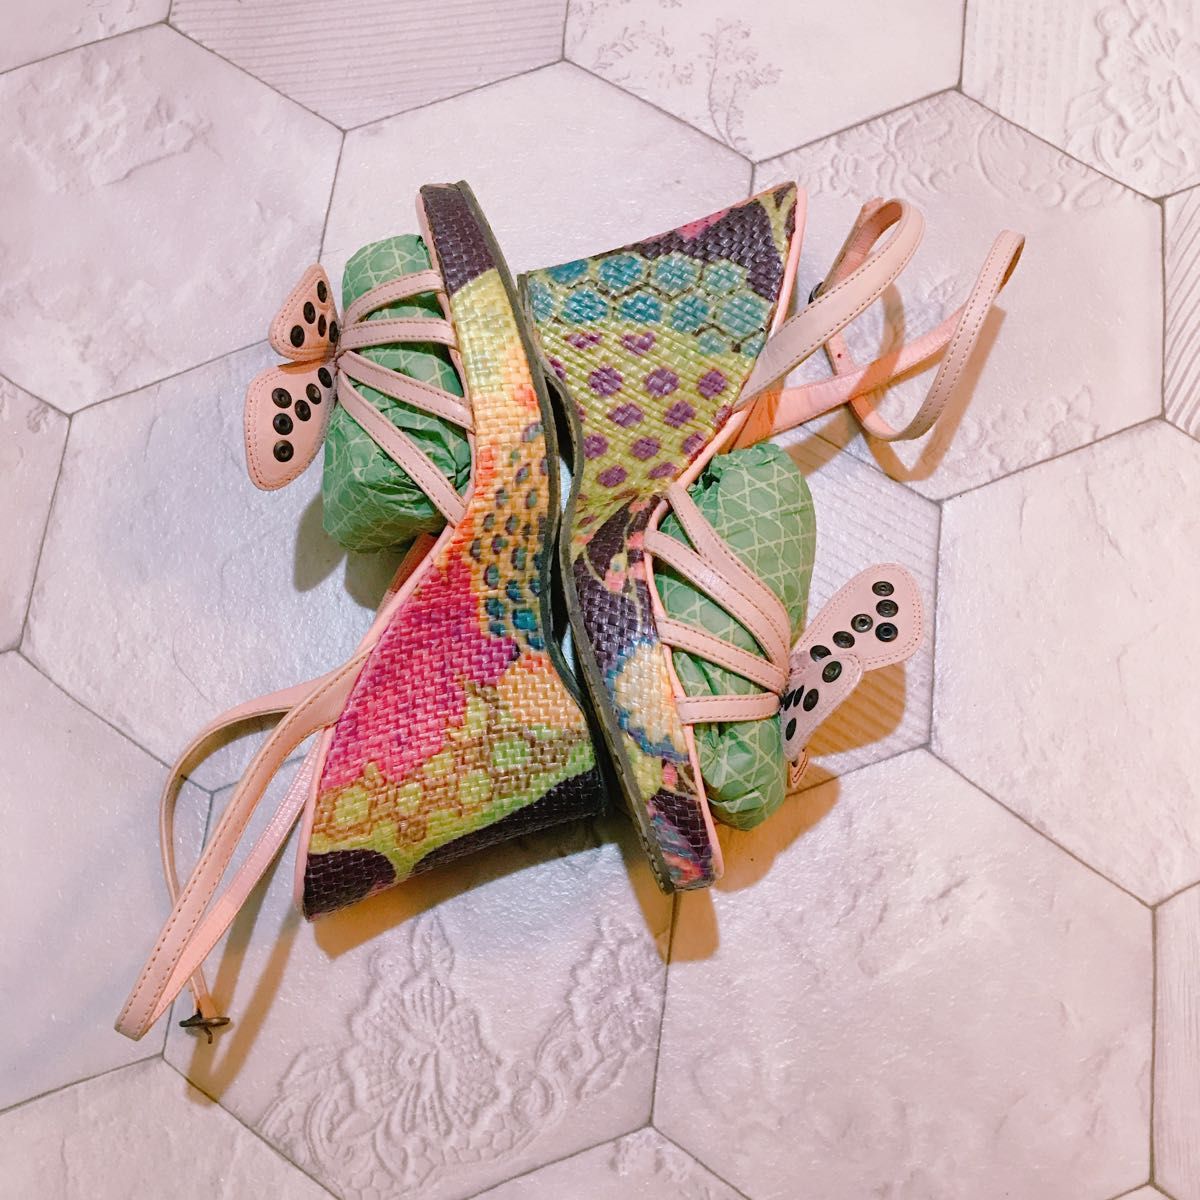 パリ購入美品 美脚 蝶々 レースアップ サンダル 24.5cm ピンクベージュ ウェッジソール 厚底ヒール靴 シューズ バタフライ